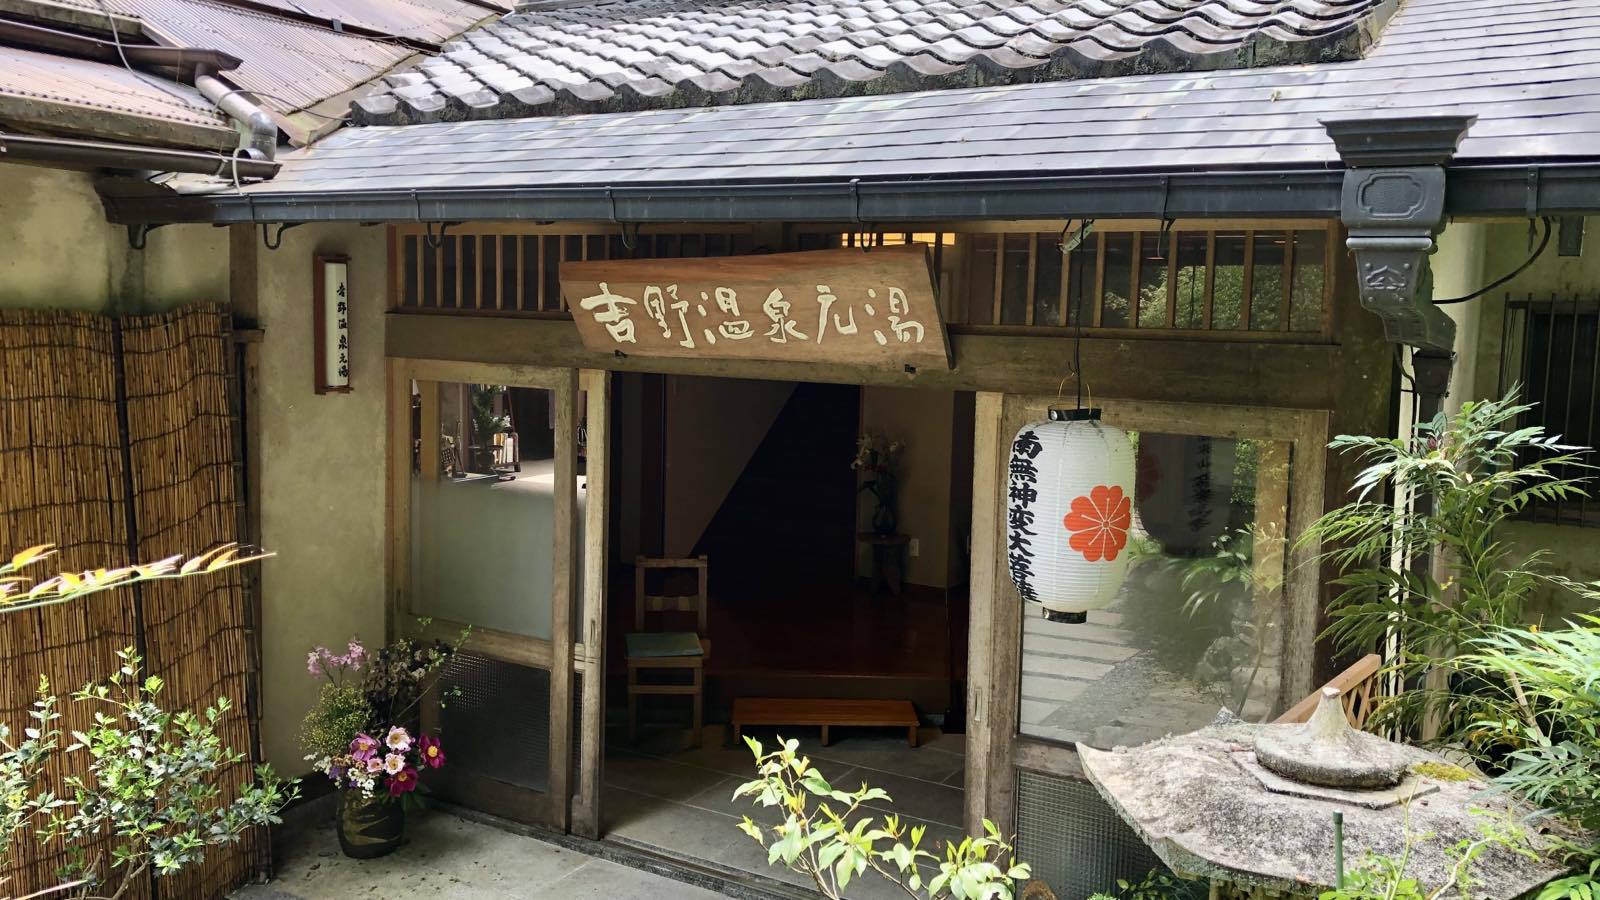 吉野山で二泊泊まるのに便利な温泉宿